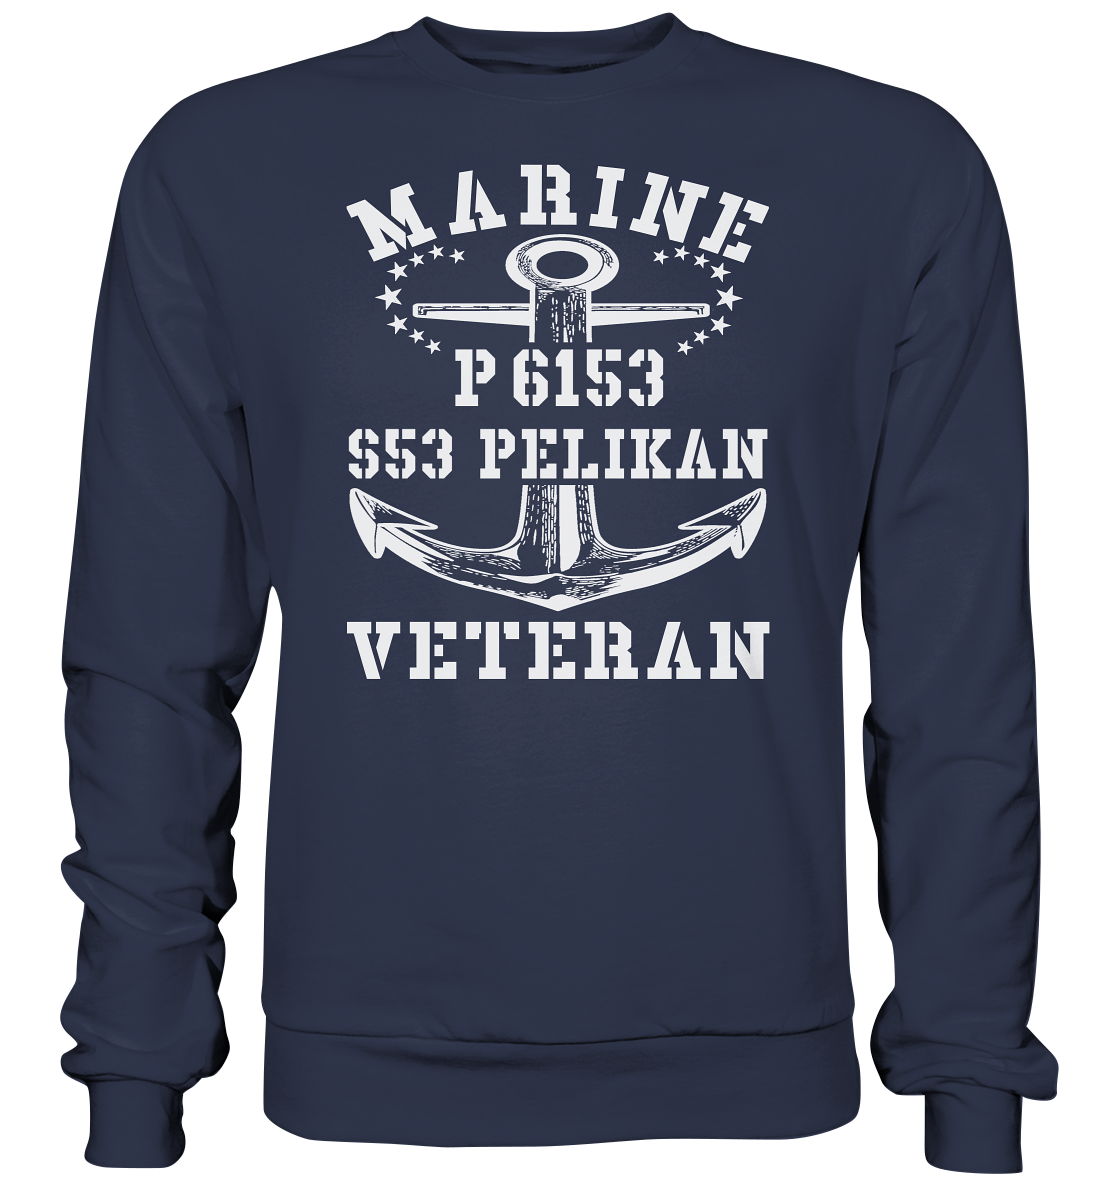 P6153 S53 PELIKAN Marine Veteran - Premium Sweatshirt